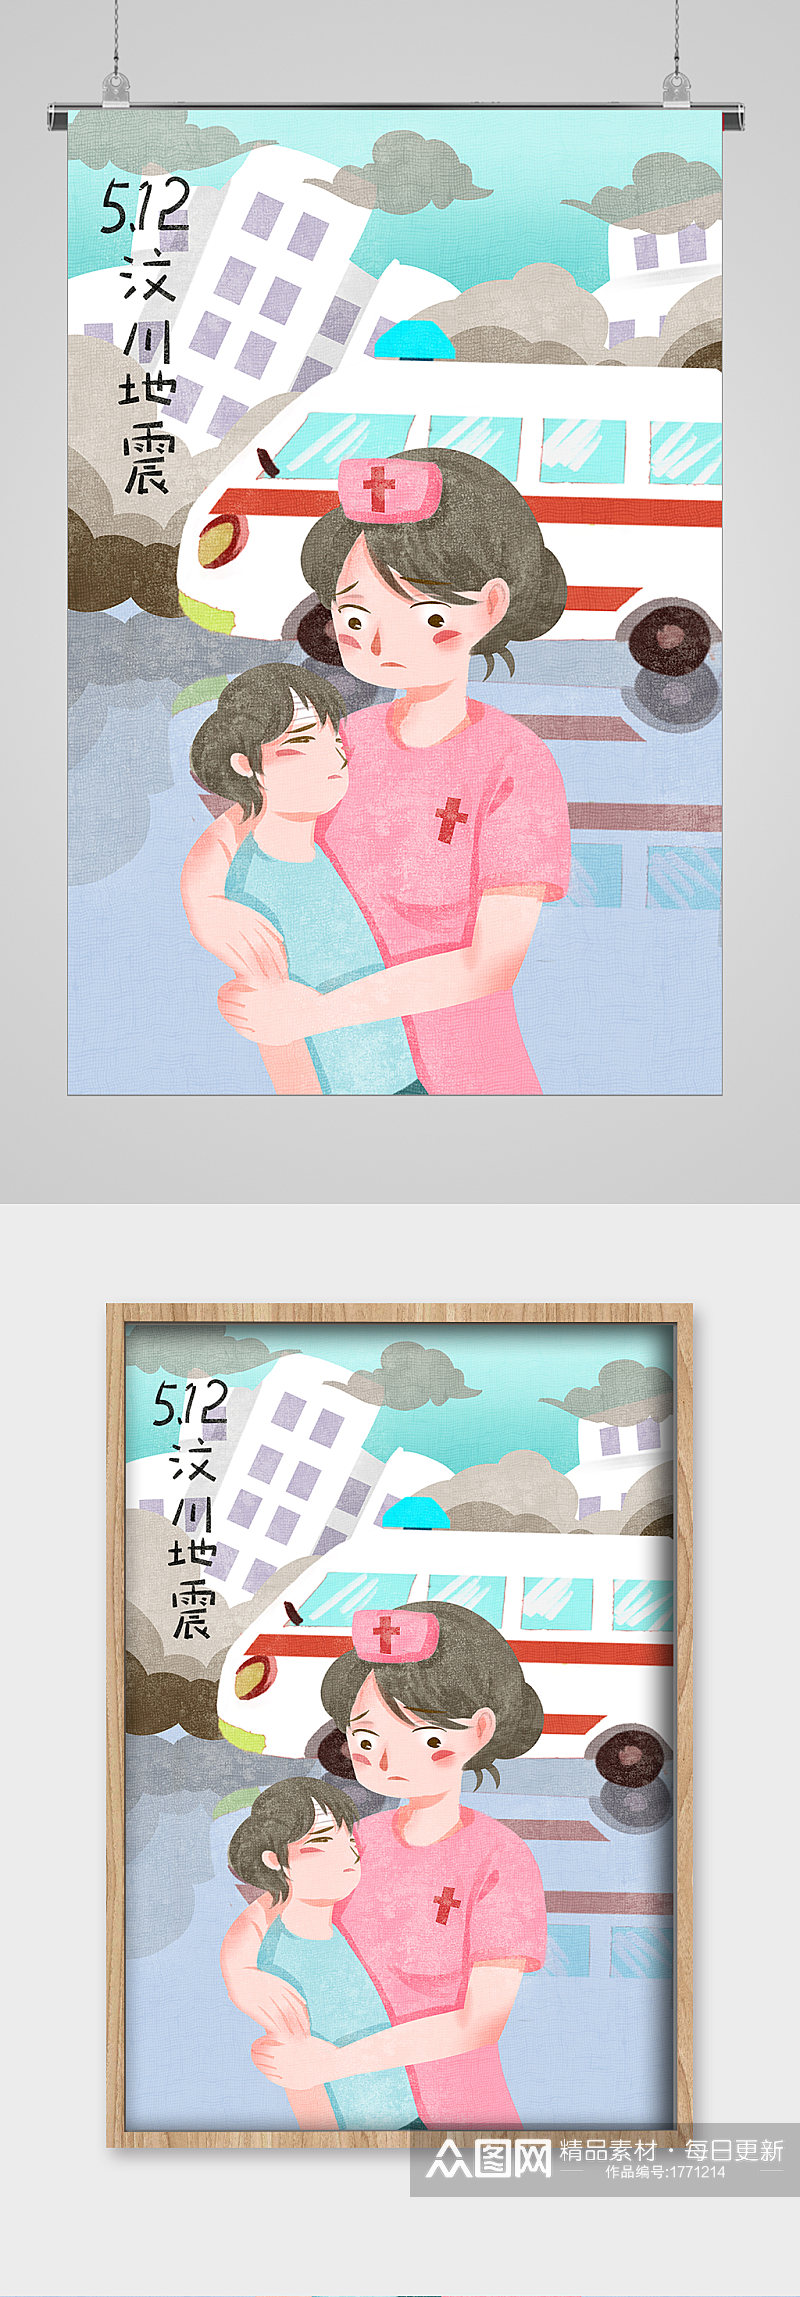 汶川地震512护士节宣传插画素材